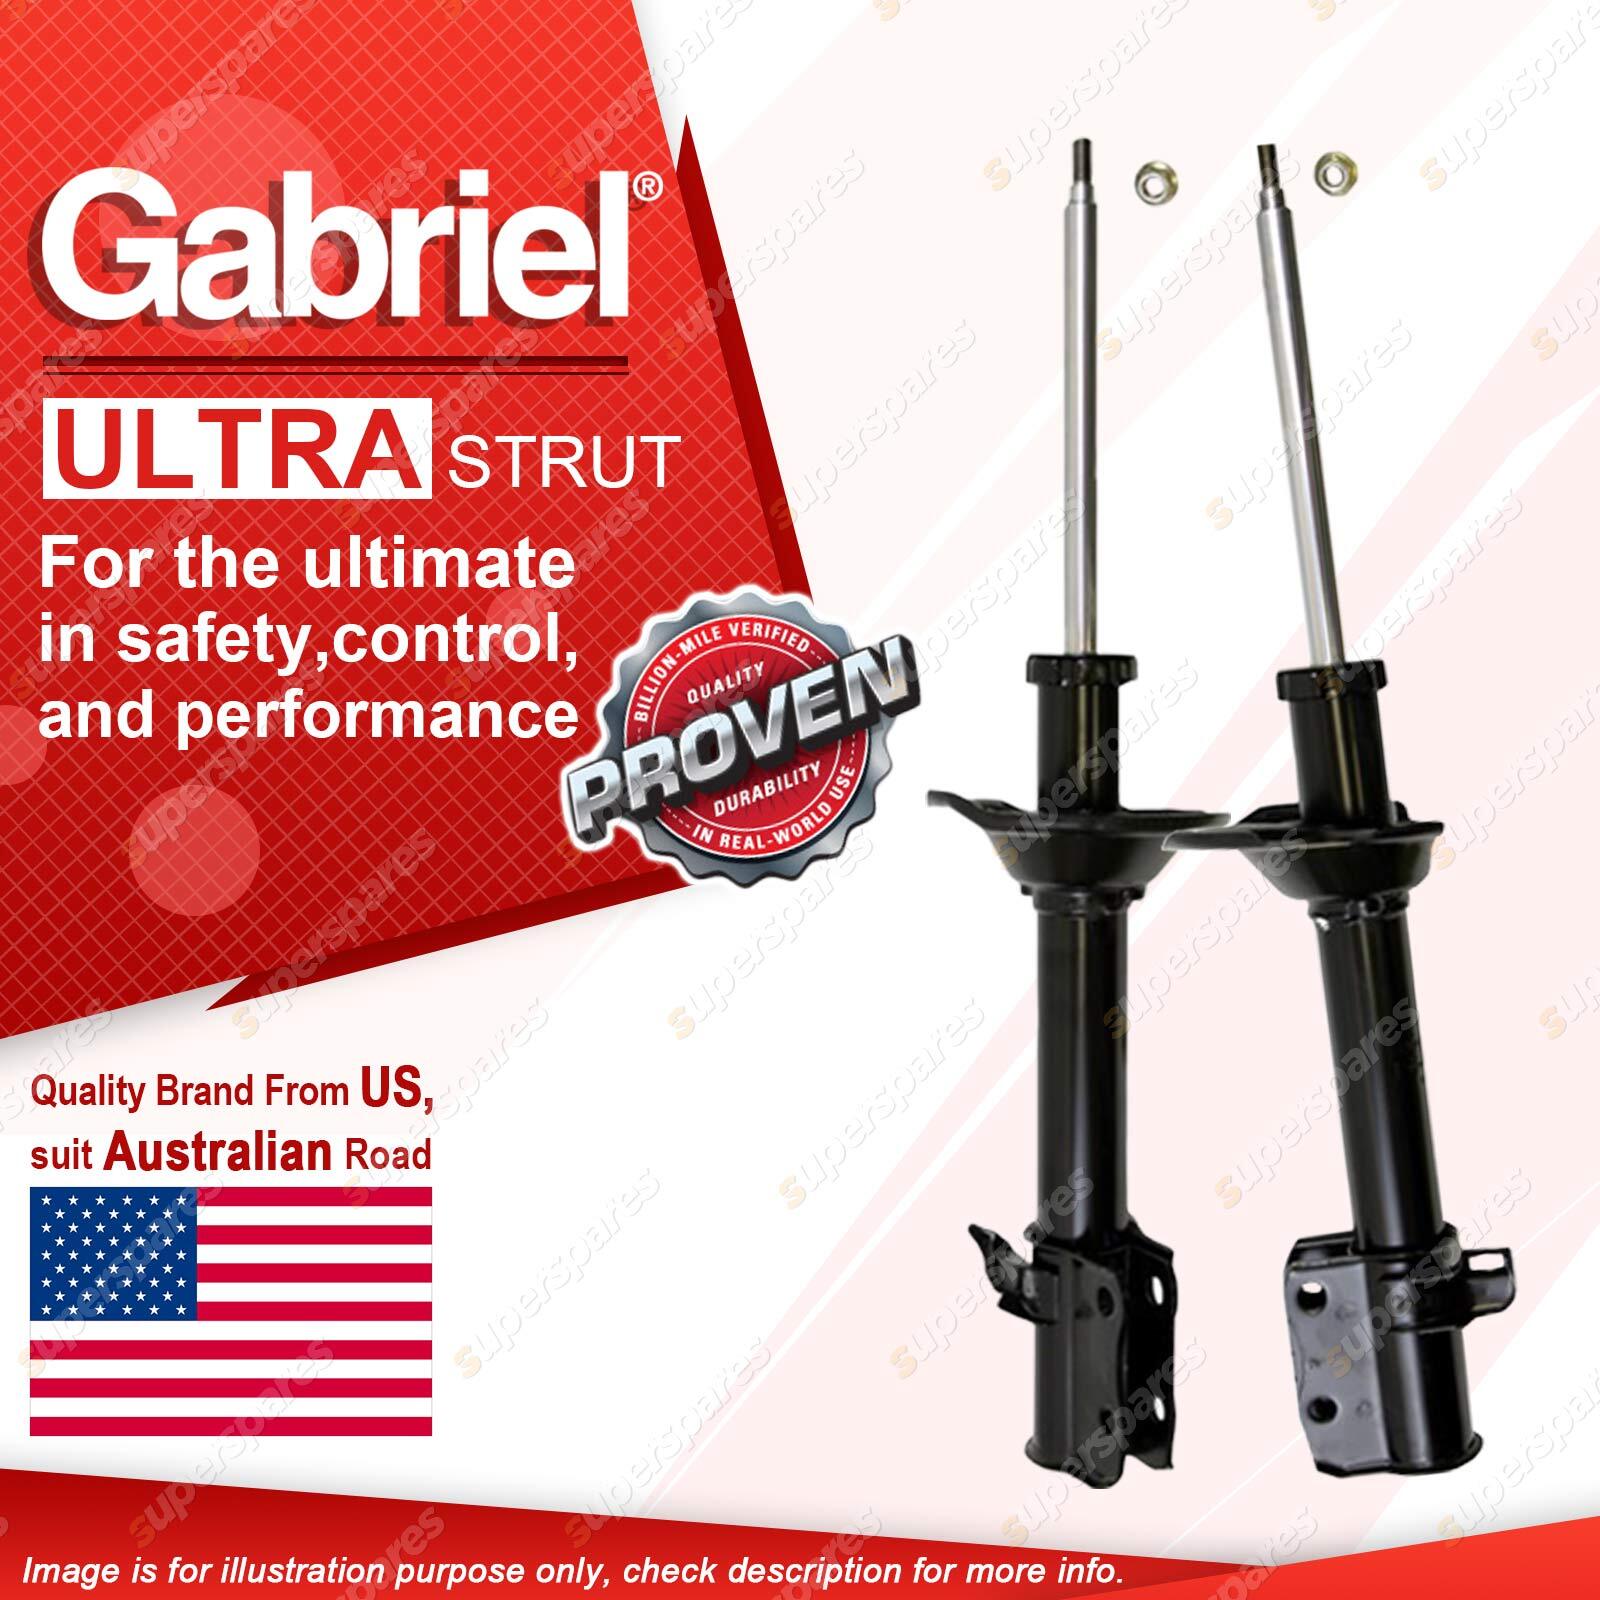 2 x Rear Gabriel Ultra Strut Shock Absorbers for Subaru